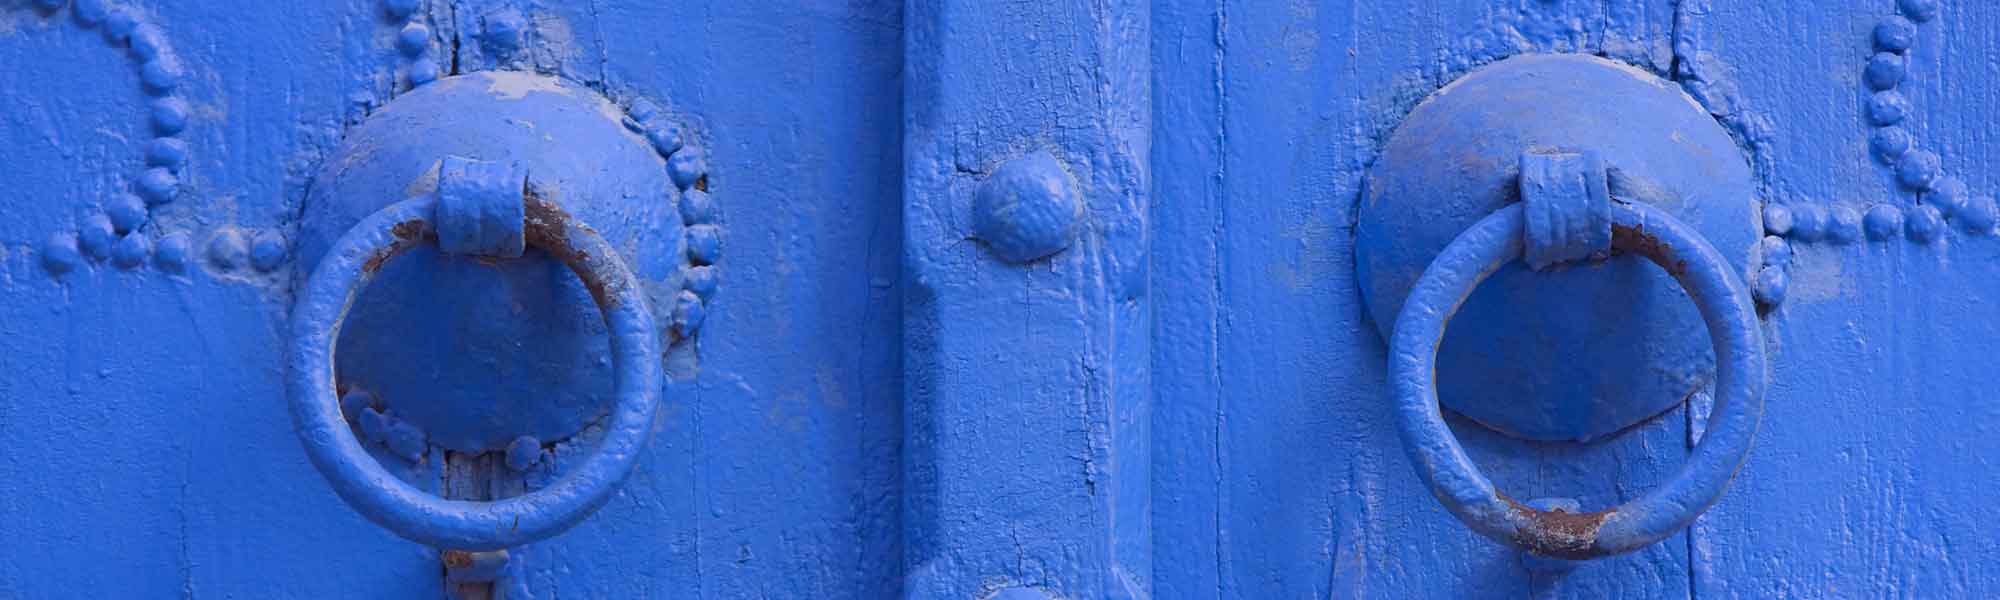 Blue door knobs